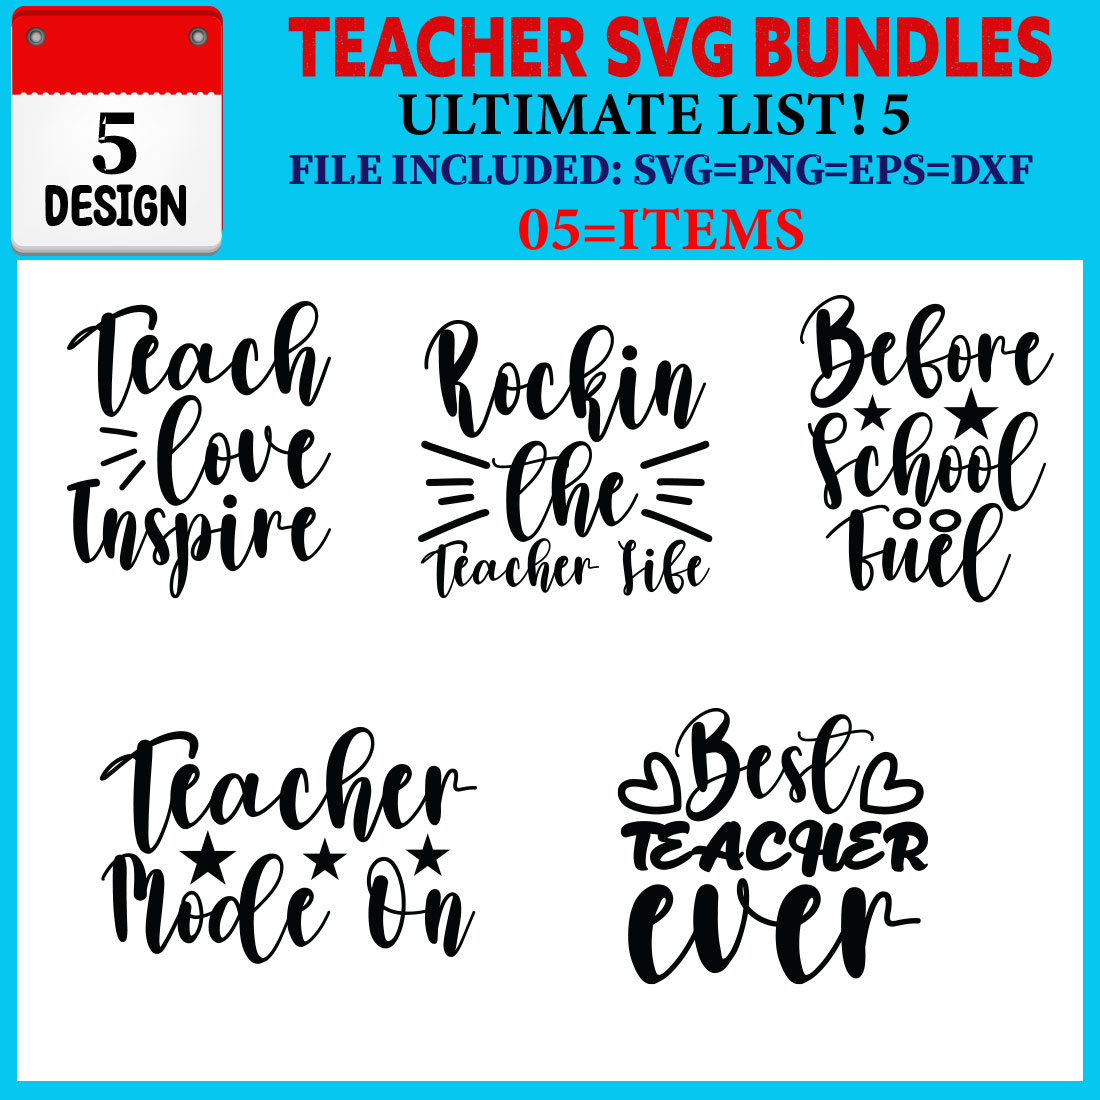 Teacher T-shirt Design Bundle Vol-08 cover image.